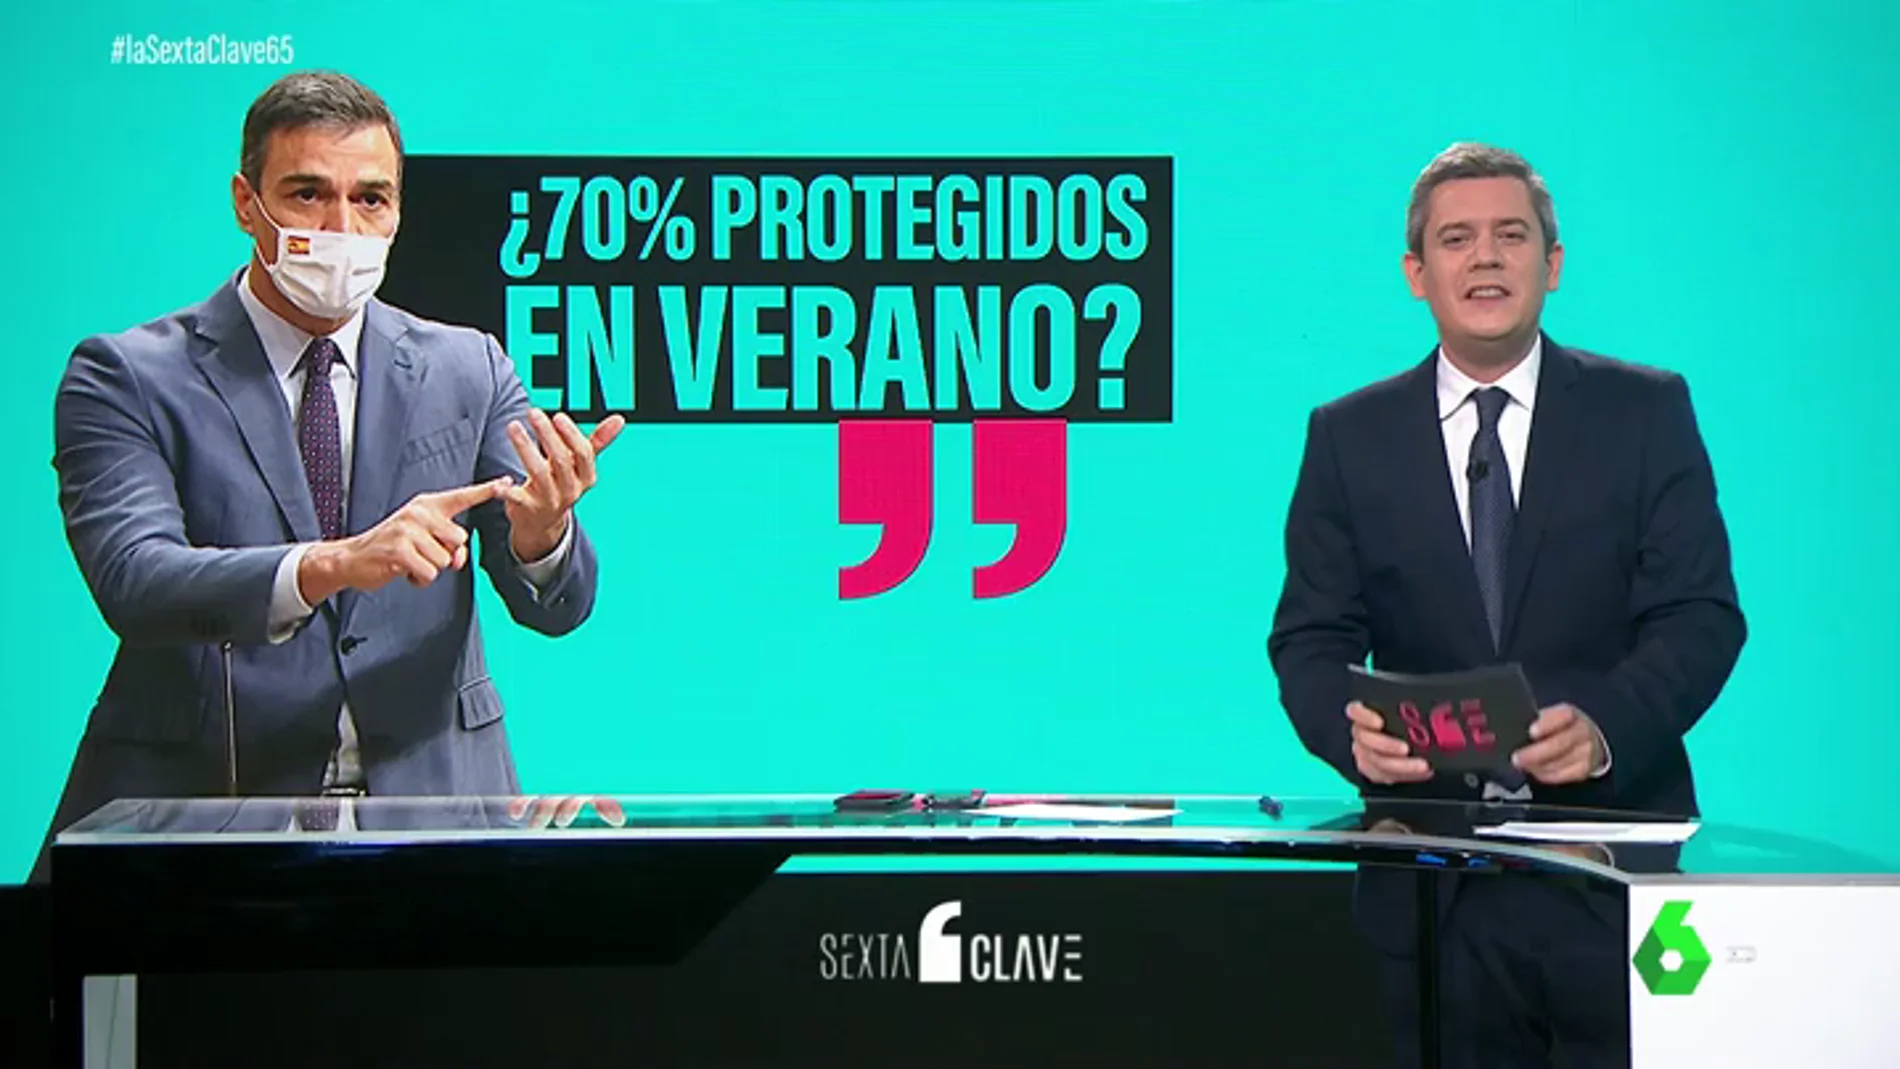 ¿Llegará España al 70% de protegidos frente al COVID en verano? Esto es lo que dicen los datos